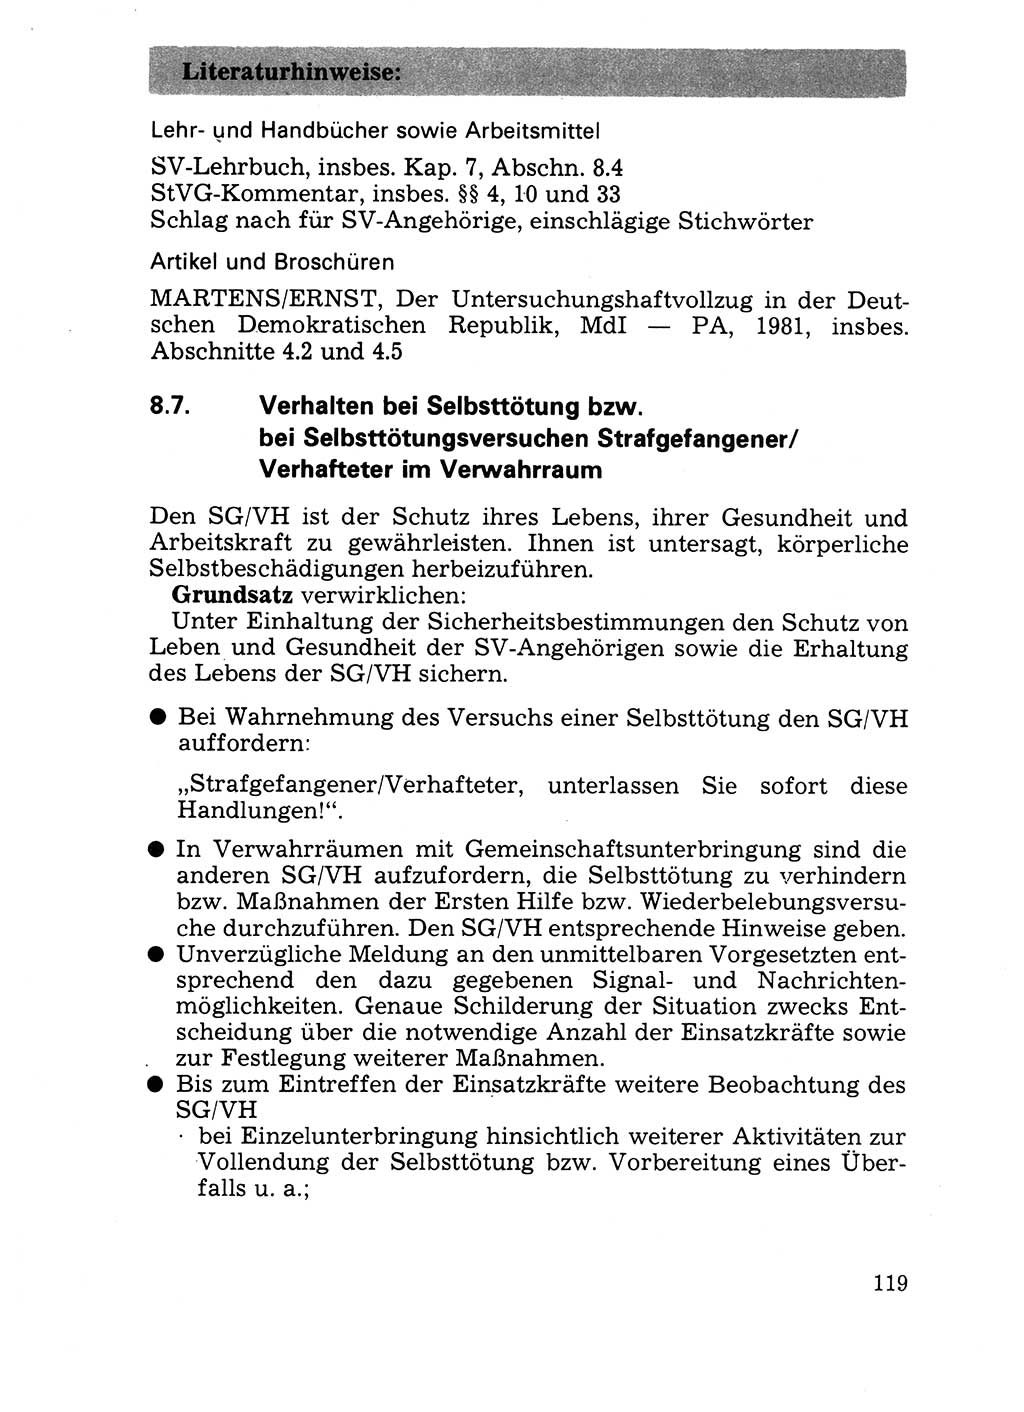 Handbuch für operative Dienste, Abteilung Strafvollzug (SV) [Ministerium des Innern (MdI) Deutsche Demokratische Republik (DDR)] 1981, Seite 119 (Hb. op. D. Abt. SV MdI DDR 1981, S. 119)